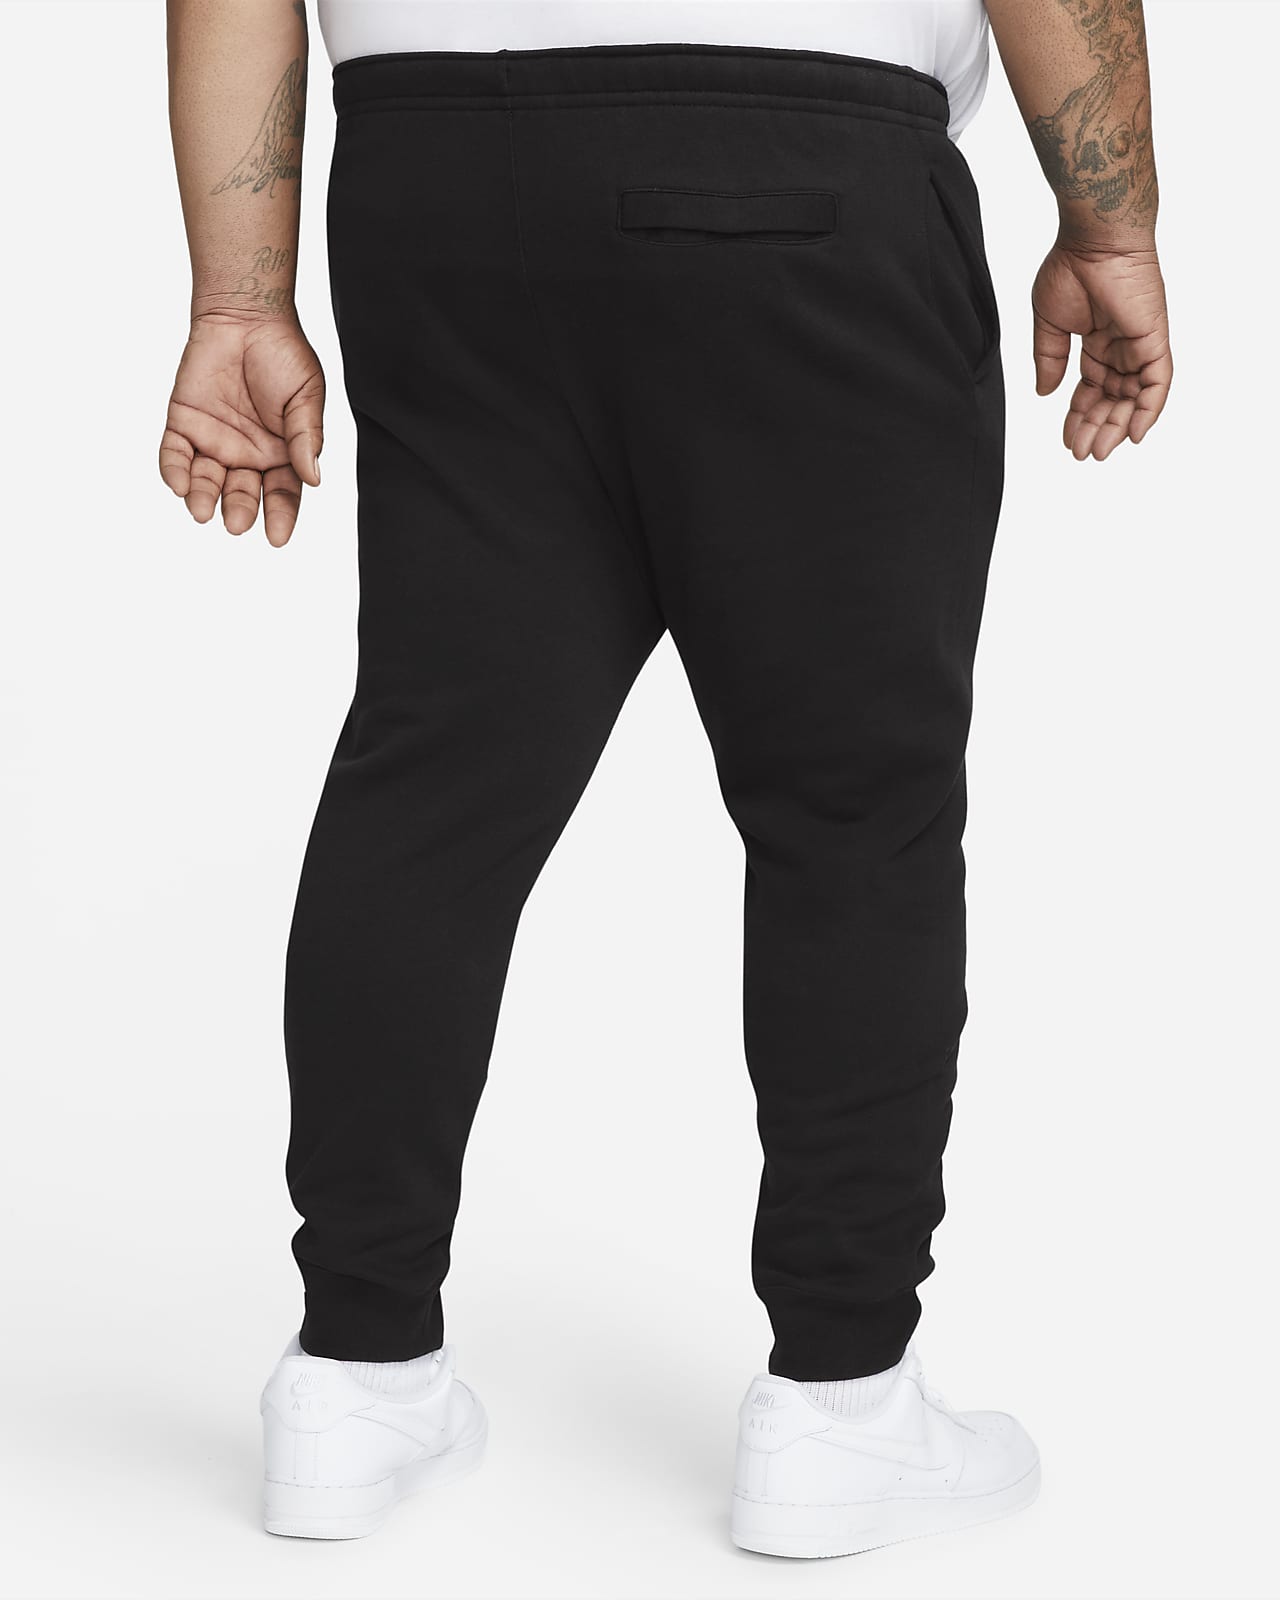 Nike Sportswear Club Fleece Straight Leg Men's Sweatpants NEW Size M BV2707- 010